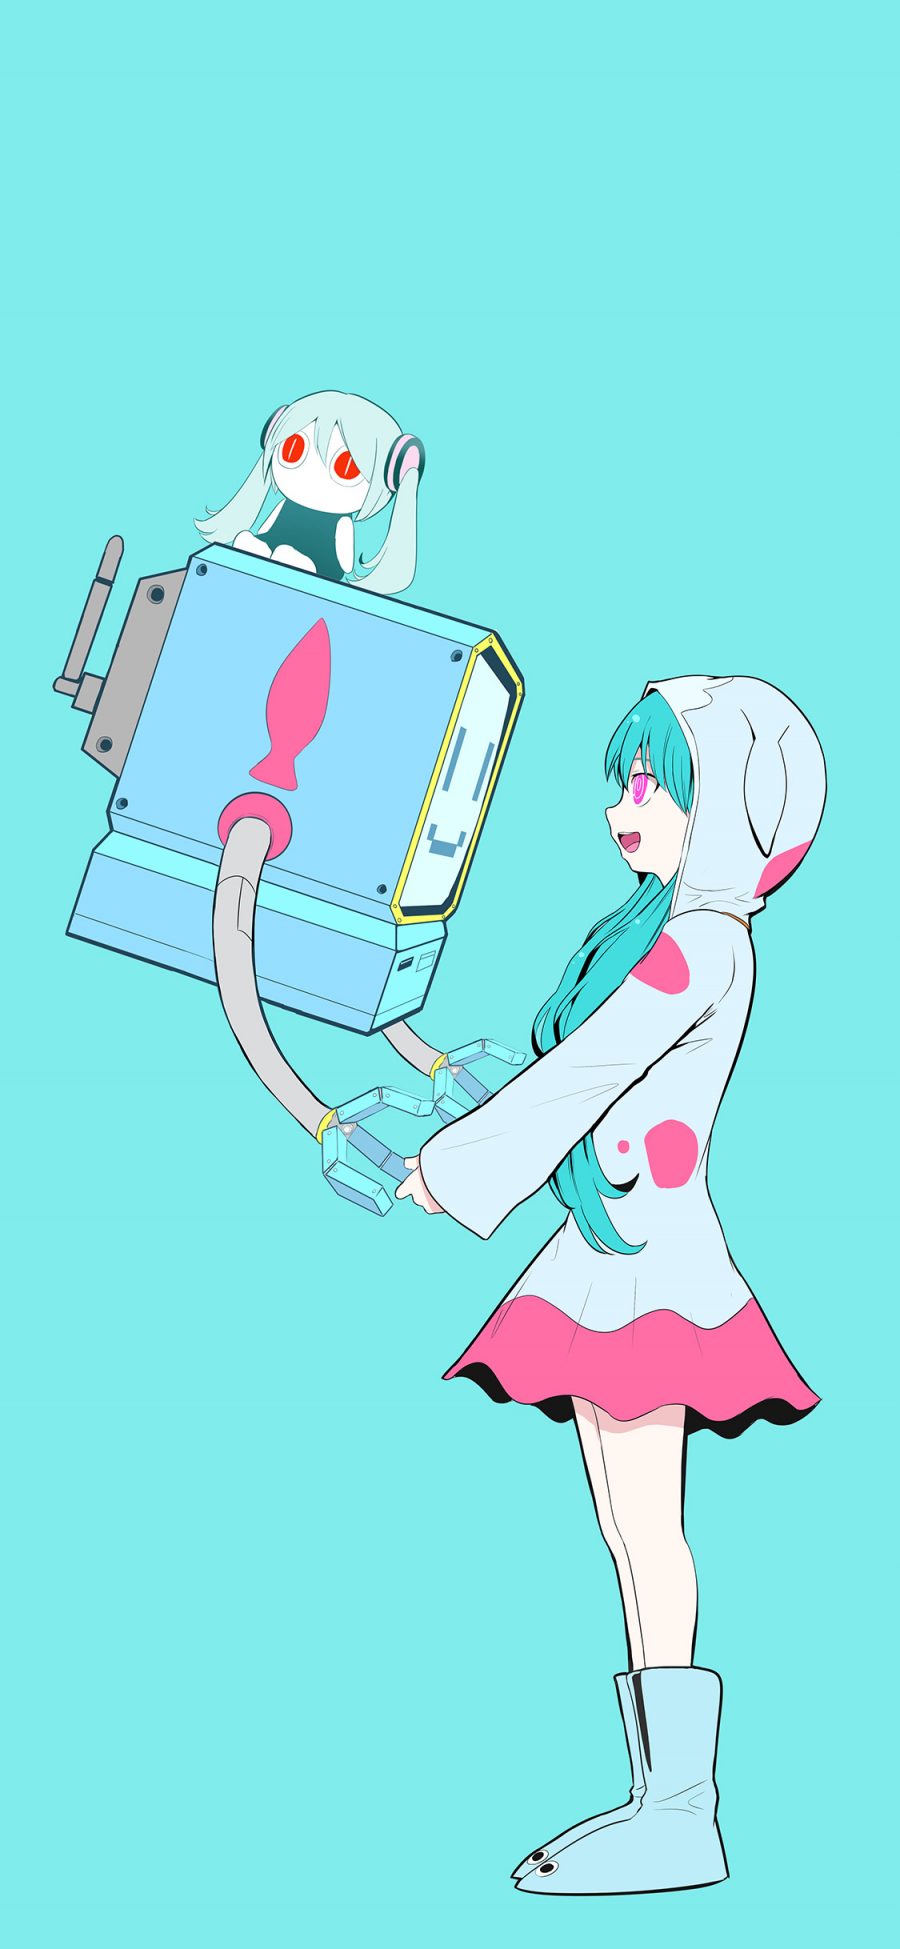 [2436×1125]日系 动漫少女 初音未来 机器人 苹果手机动漫壁纸图片